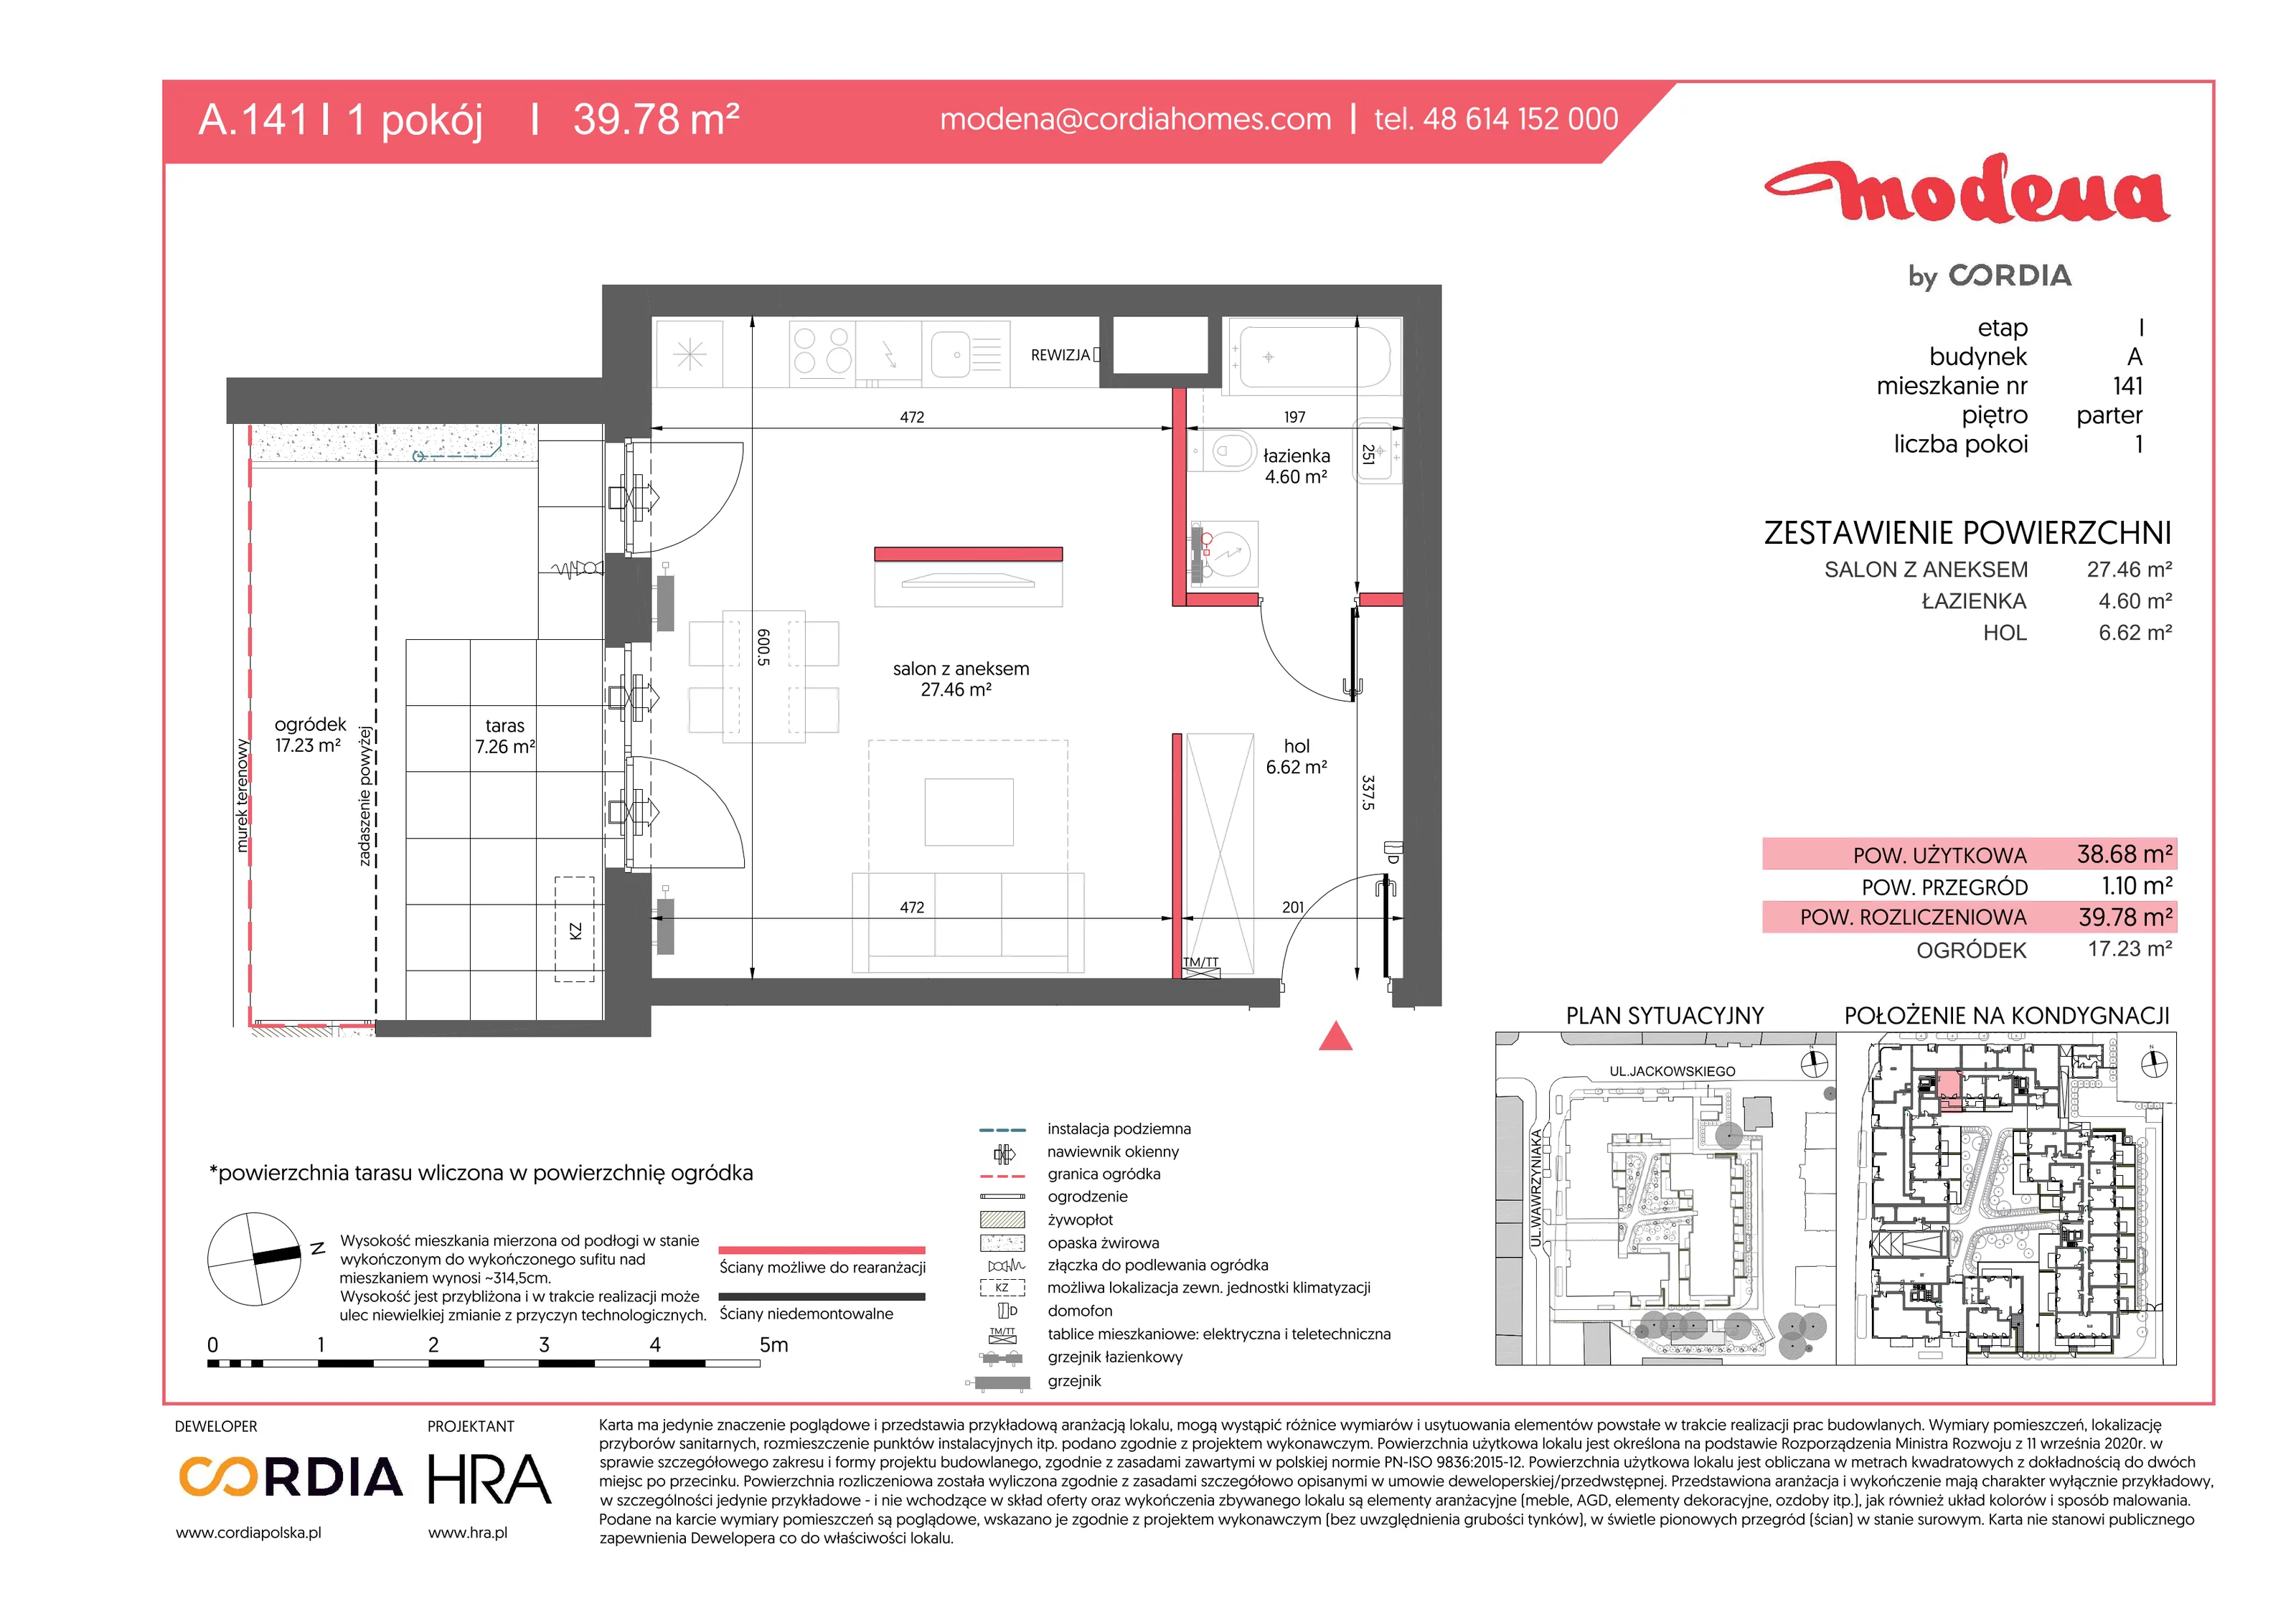 Mieszkanie 39,78 m², parter, oferta nr A.141, Modena, Poznań, Jeżyce, Jeżyce, ul. Jackowskiego 24